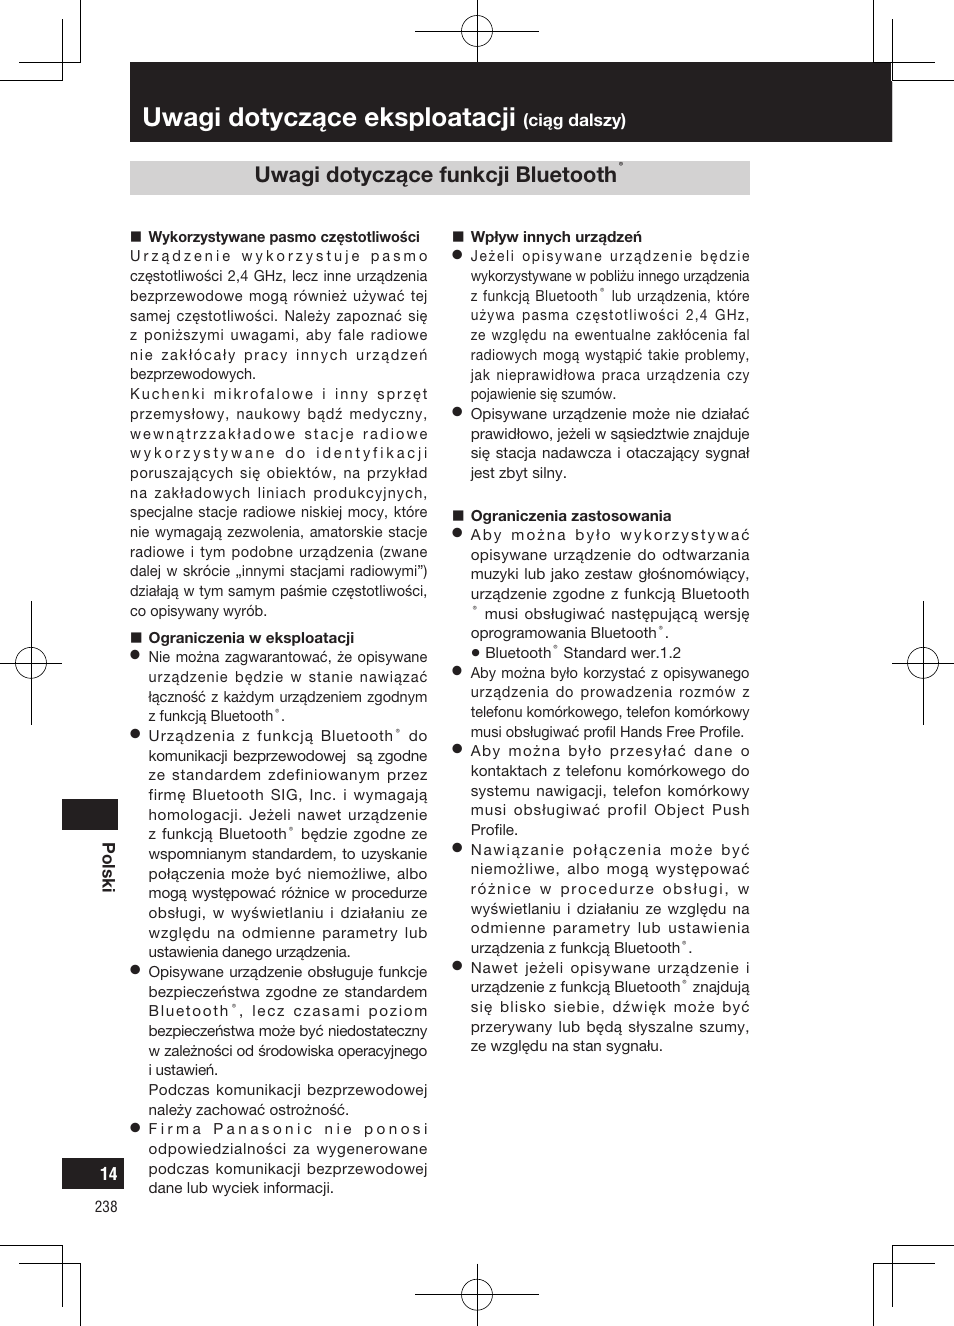 Uwagi dotyczące eksploatacji, Uwagi dotyczące funkcji bluetooth | Panasonic CNGP50N User Manual | Page 238 / 336